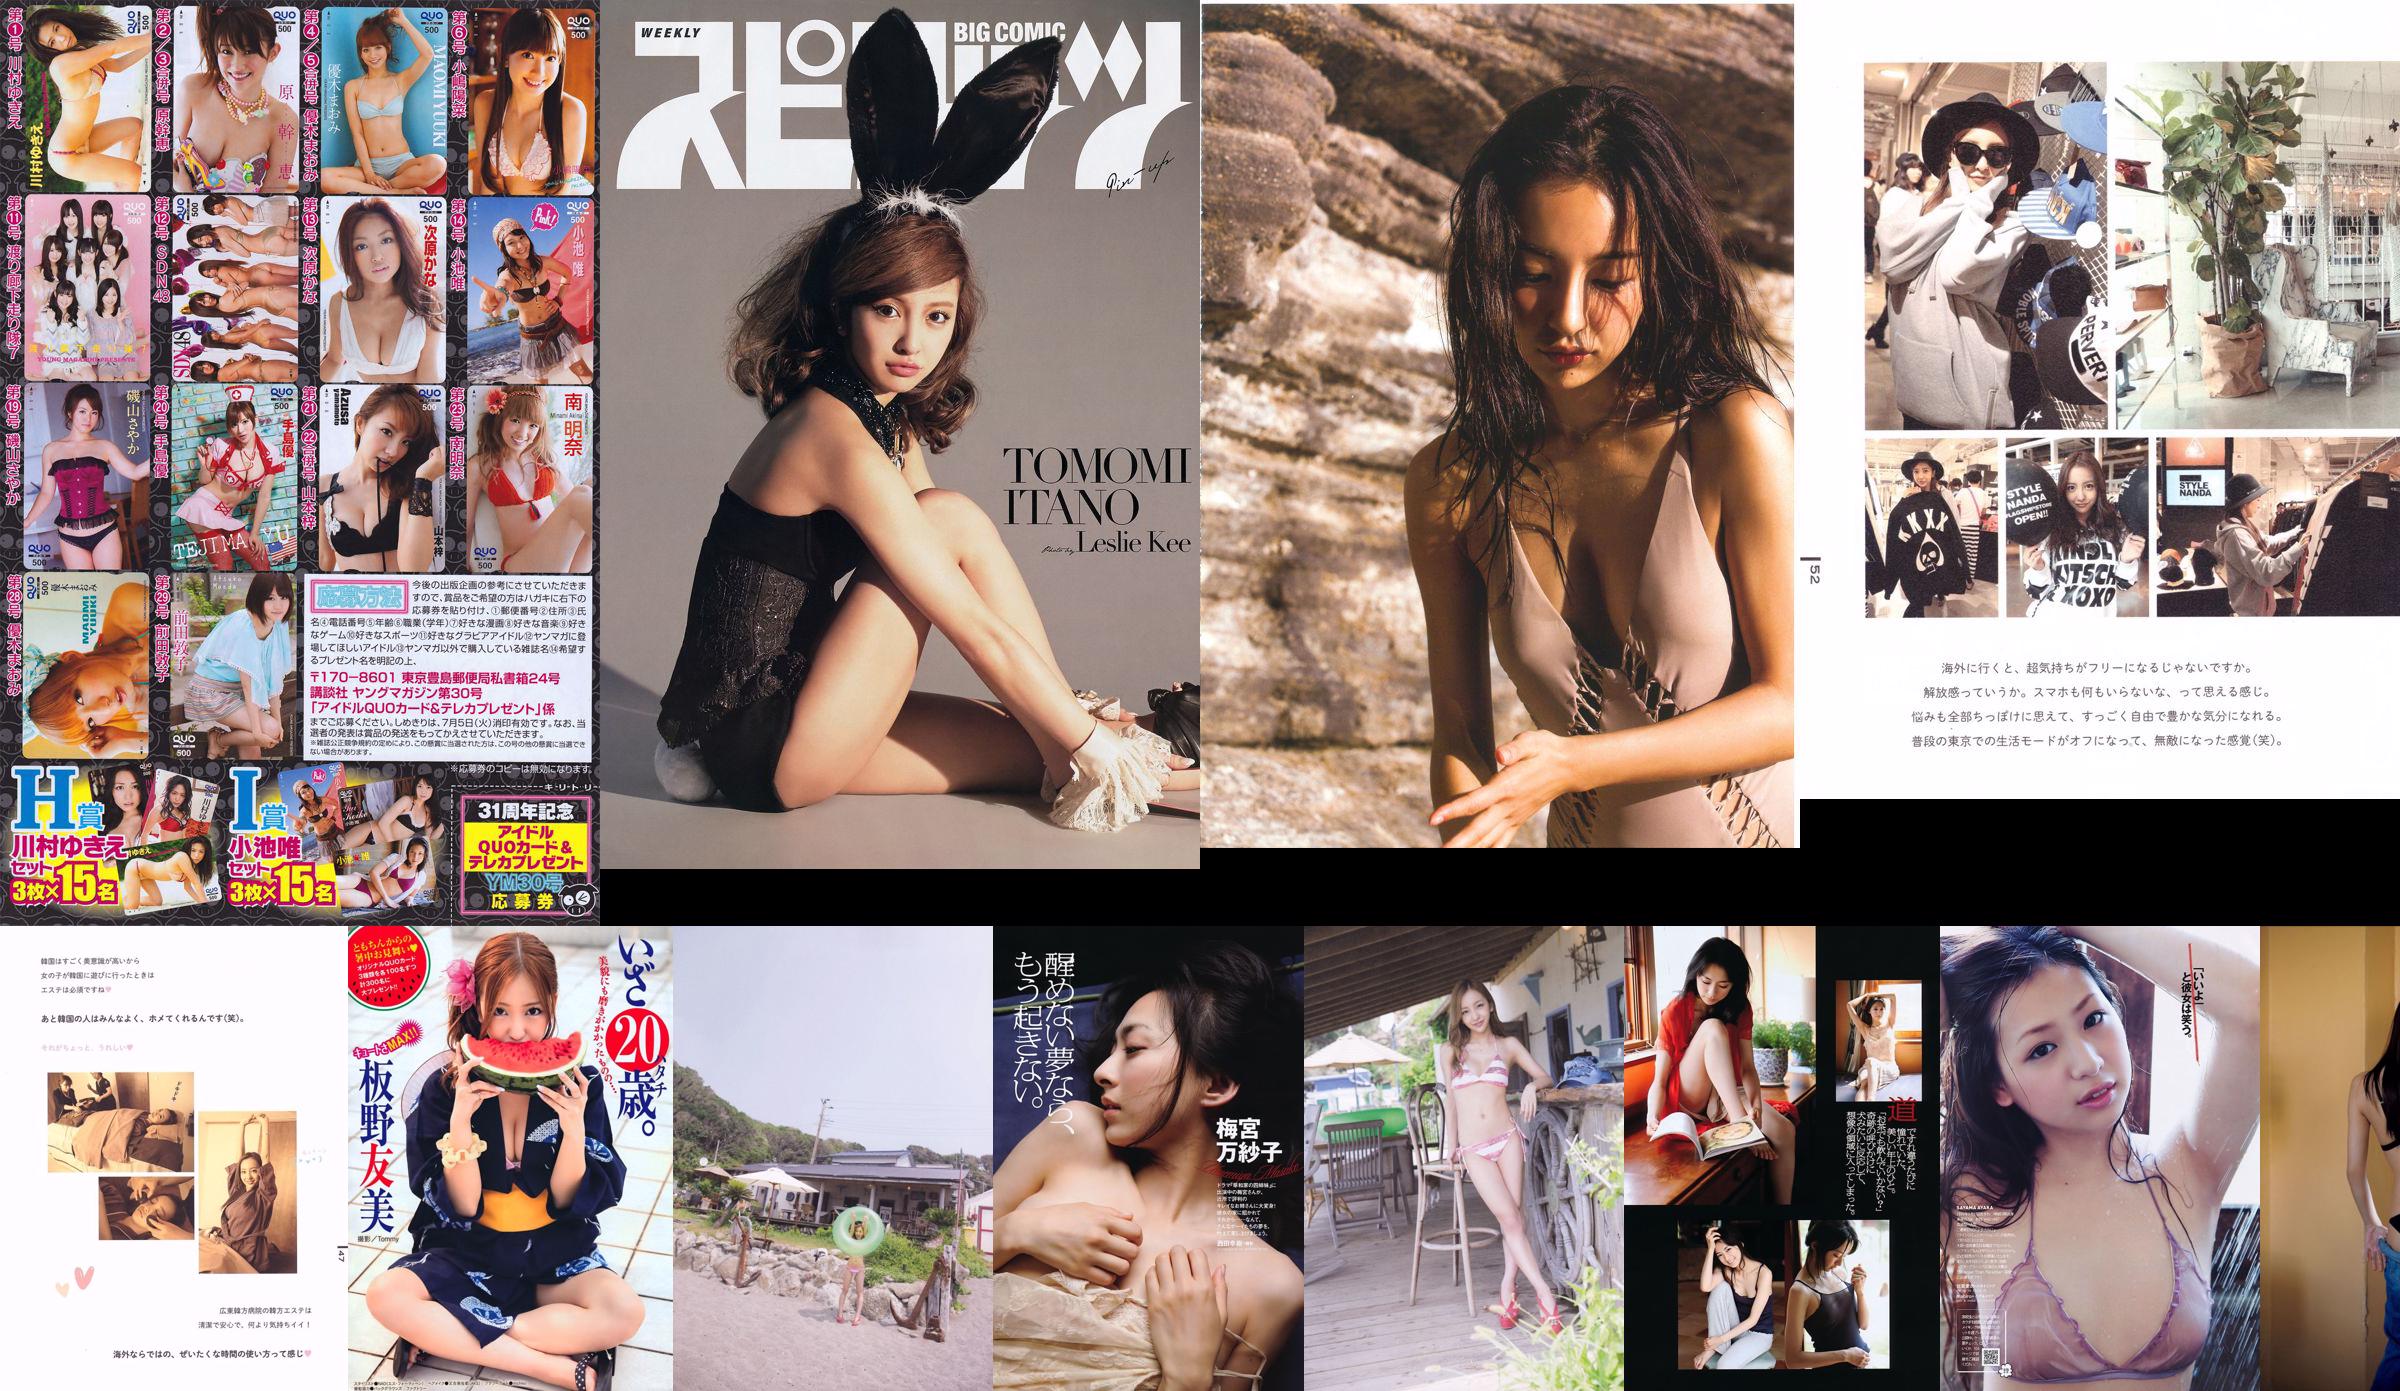 [VRIJDAG] Tomomi Itano << Ik hou van lingerie!  No.cf76a1 Pagina 2